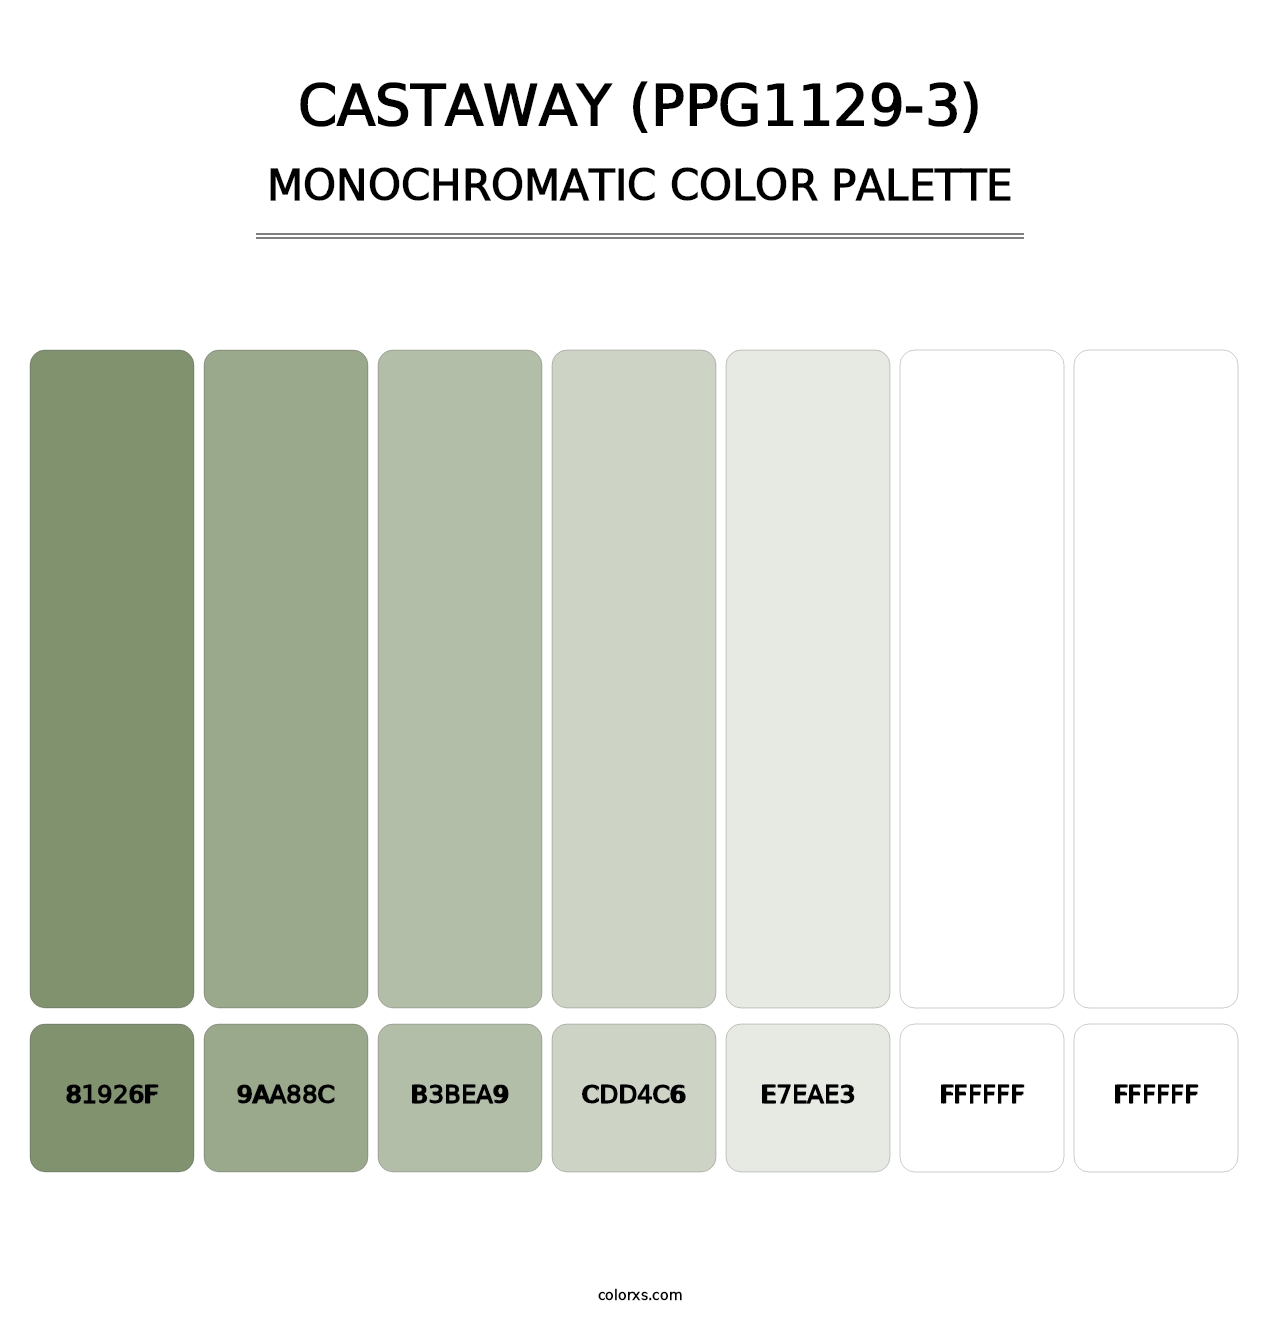 Castaway (PPG1129-3) - Monochromatic Color Palette